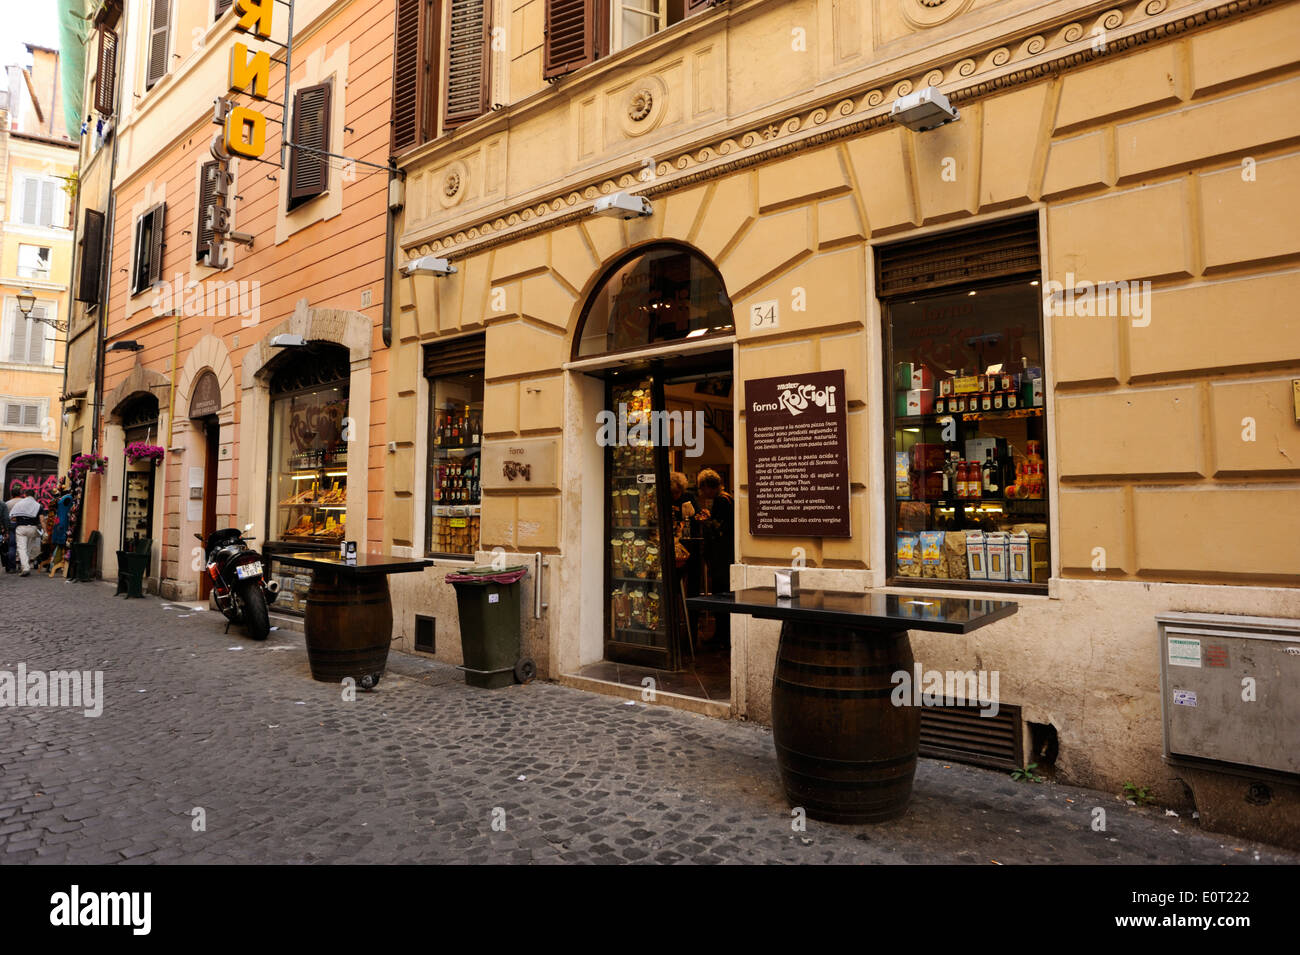 Italia, Roma, forno Antico forno Roscioli Foto stock - Alamy